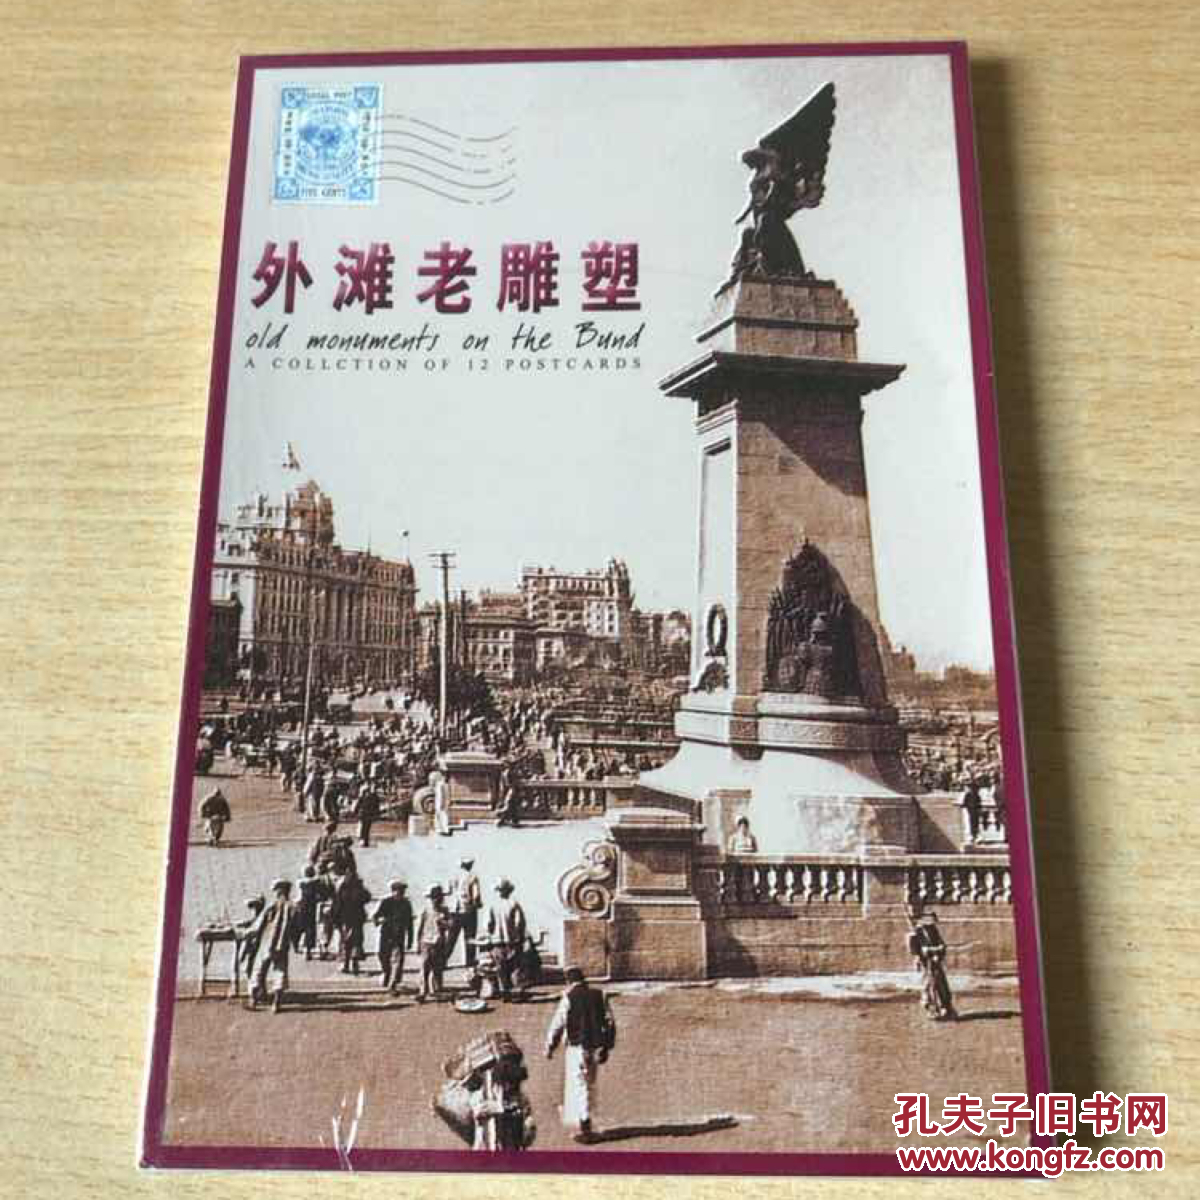 外滩老雕塑 上海著名旧址摄影明信片